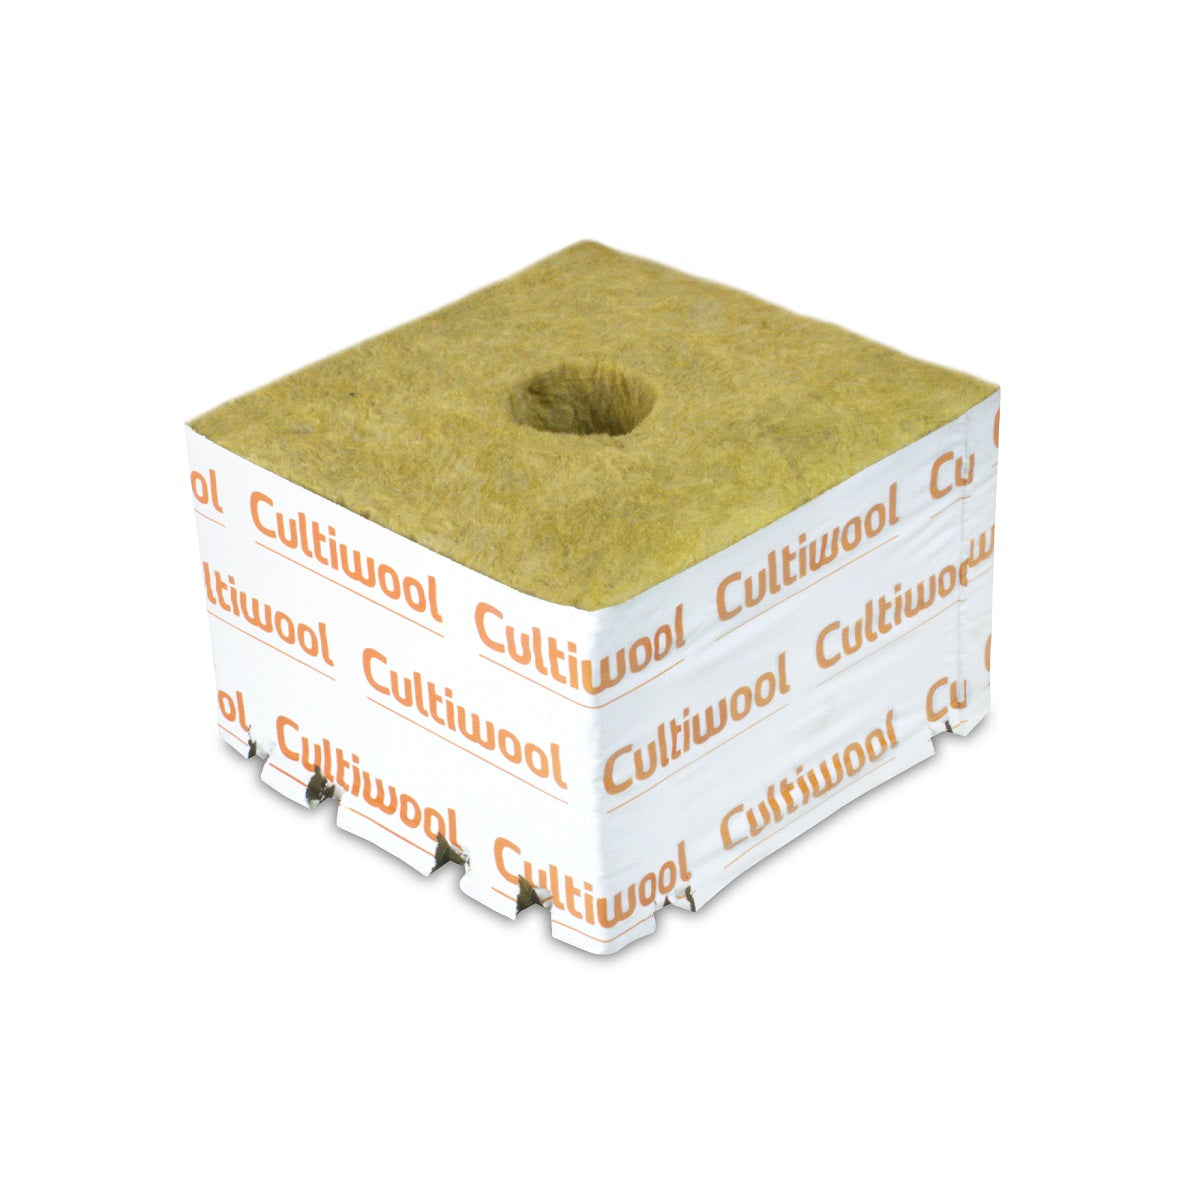 Cube de laine de roche Cultiwool 10x10x6,5cm